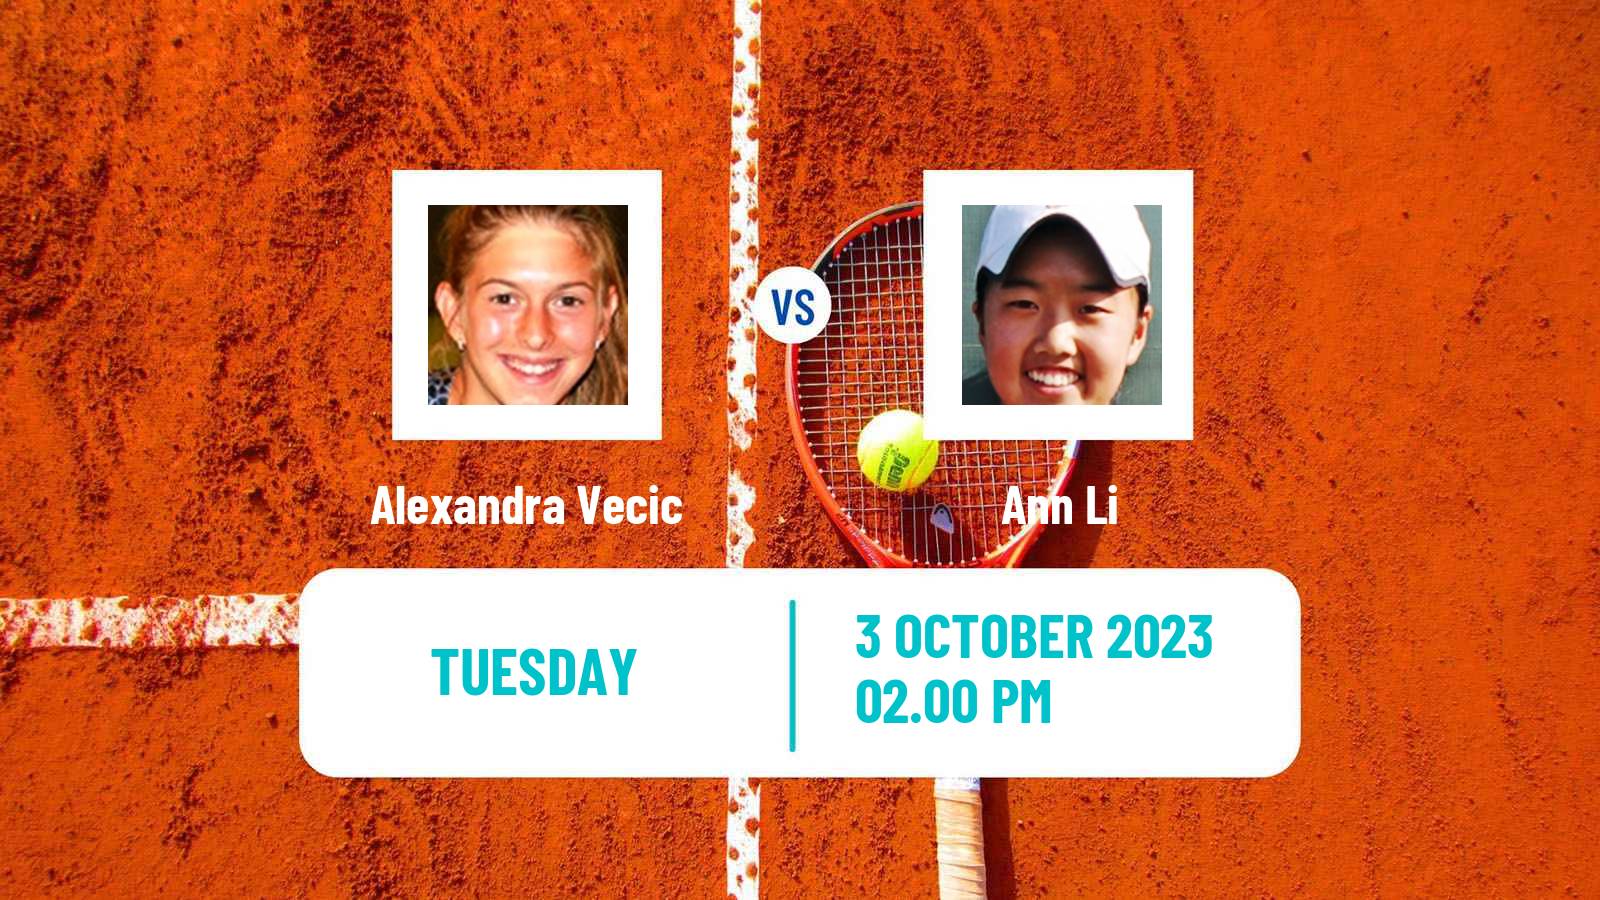 Tennis ITF W60 Rome Ga 2 Women Alexandra Vecic - Ann Li